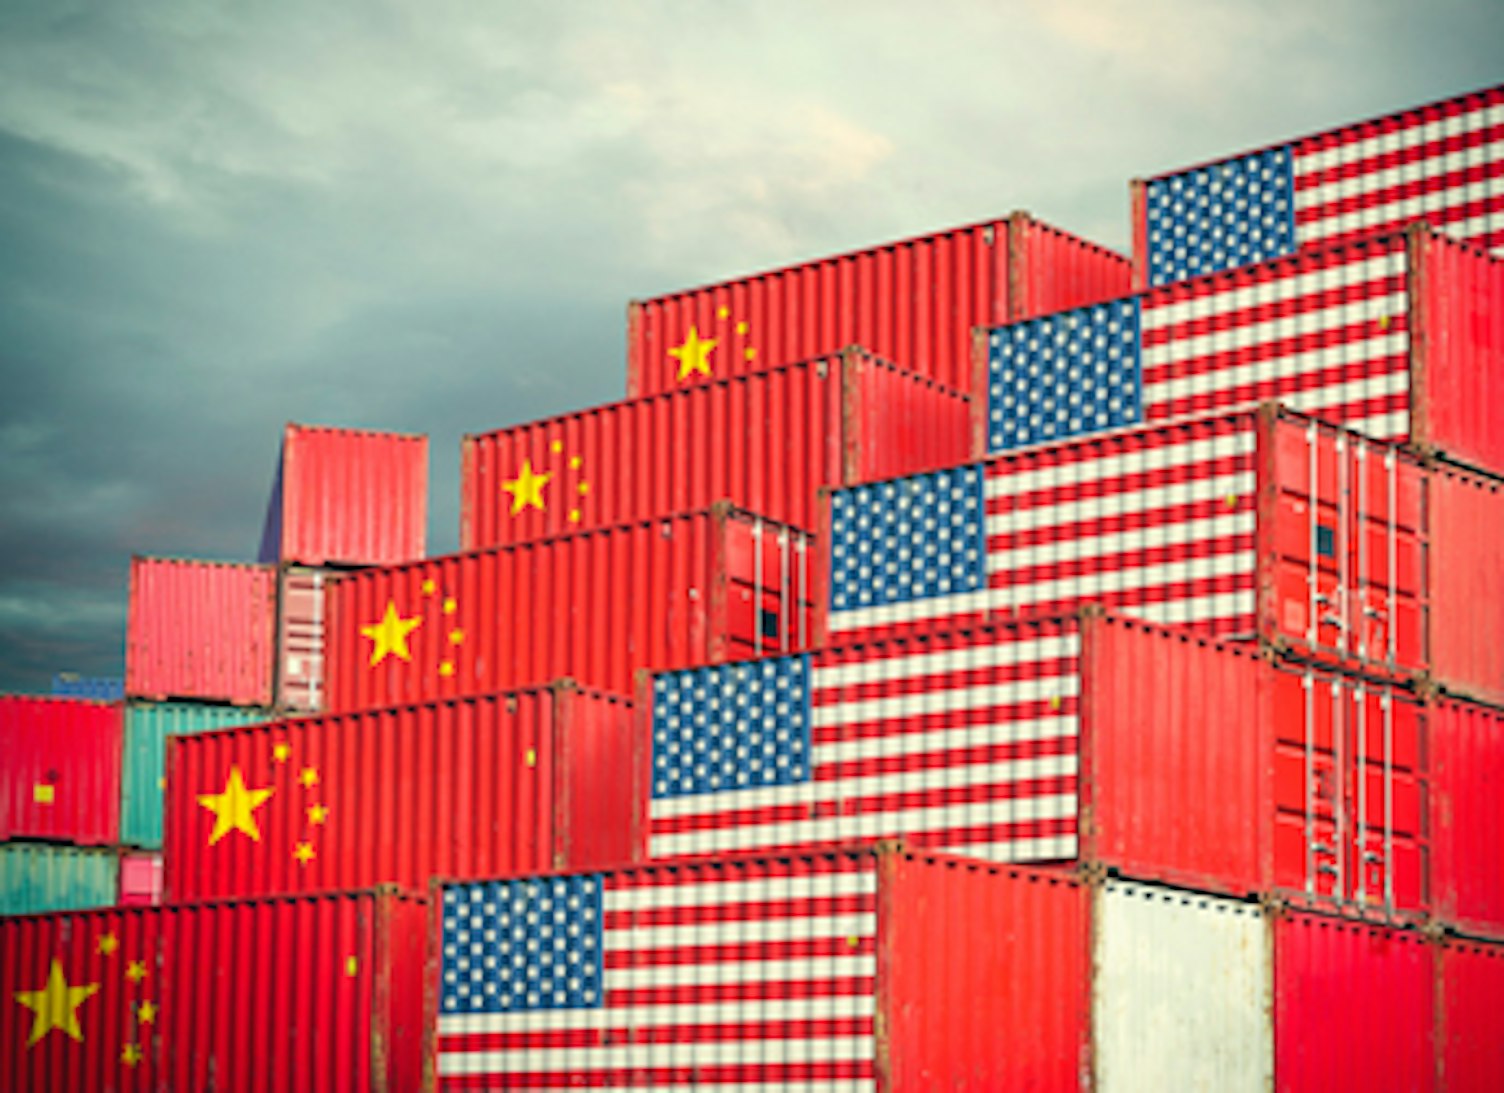 中国和美国货物集装箱反映了贸易战和进出口限制